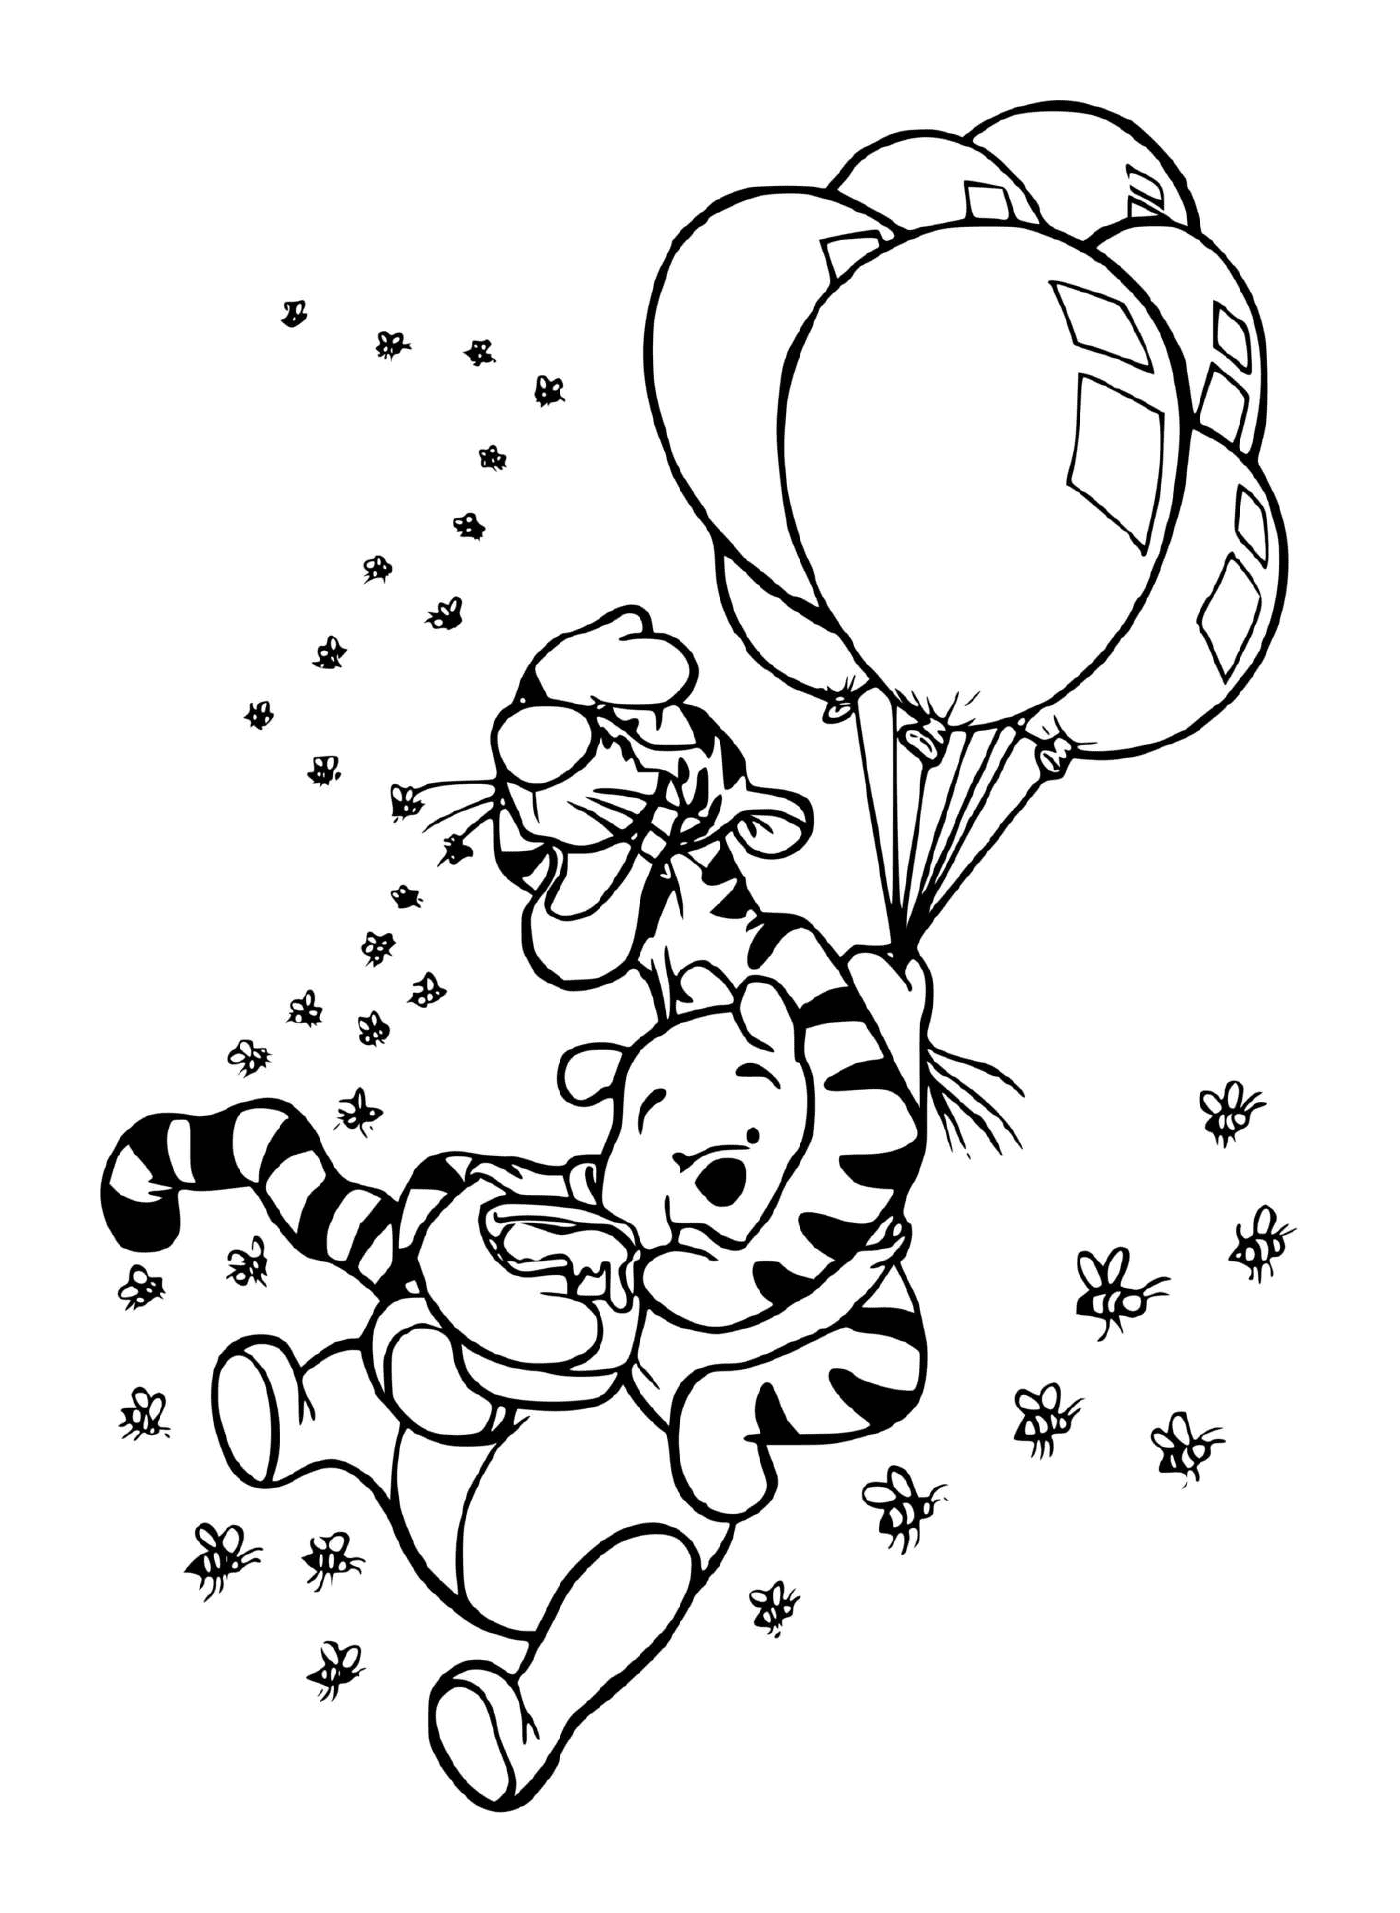  Tigrou y Winnie en el aire con globos y una olla de miel 